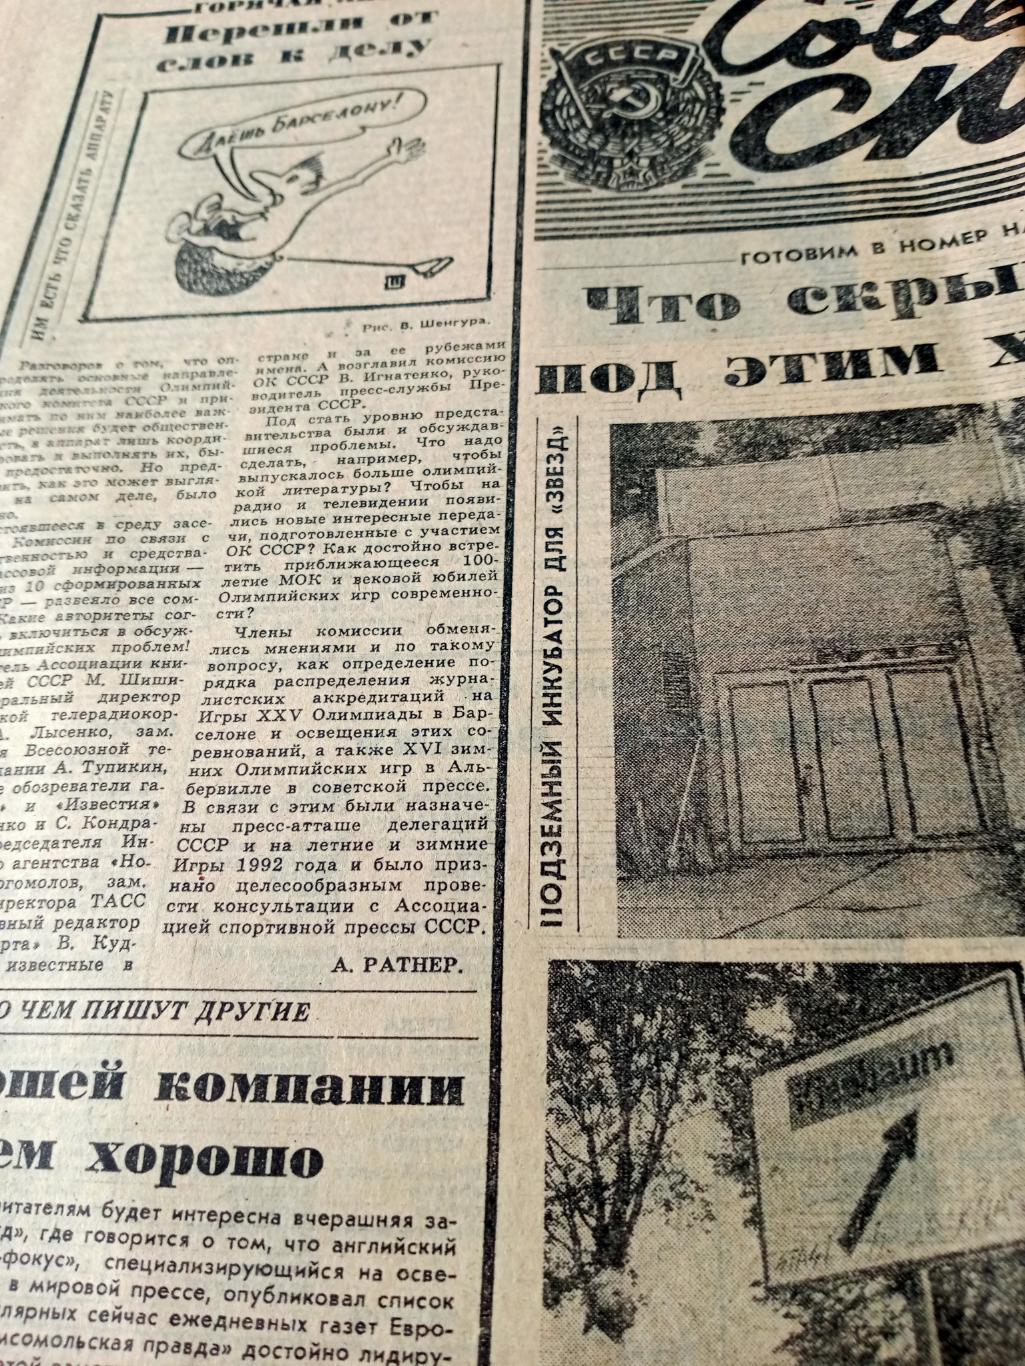 Важные старты. Советский спорт. 1991 год. 9 августа